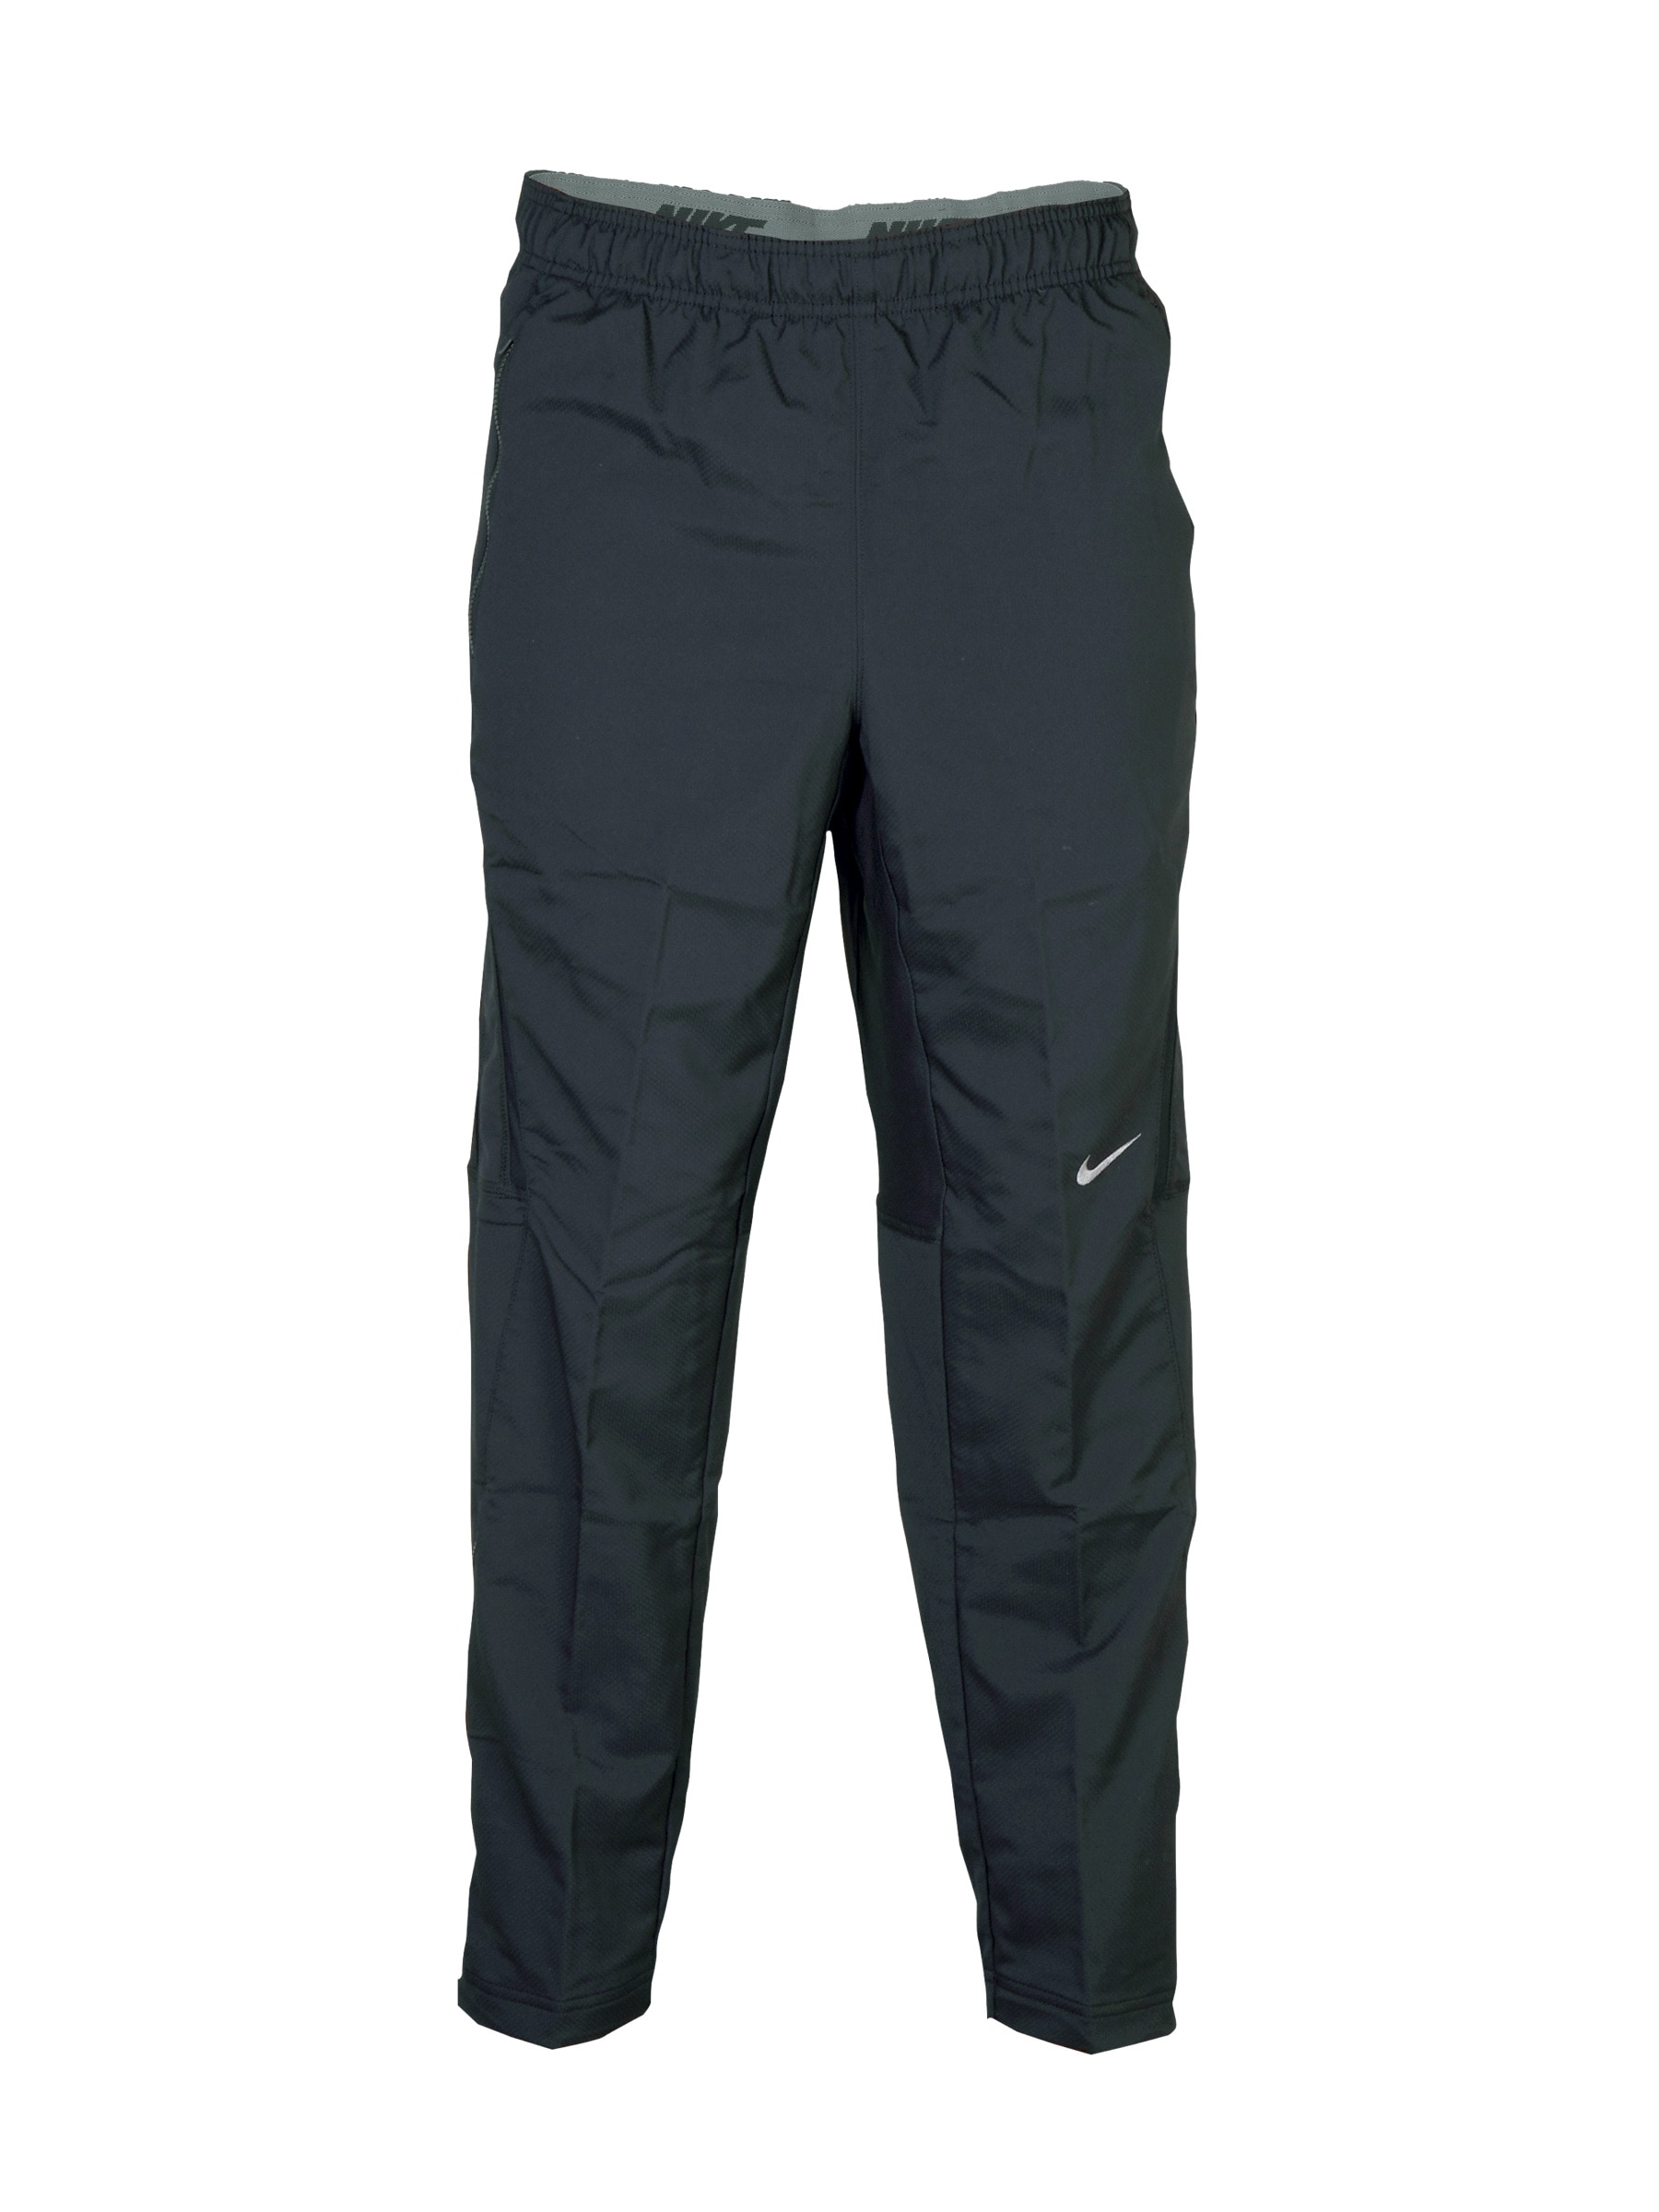 Nike Men's As Vapor Wove Black Track Pants